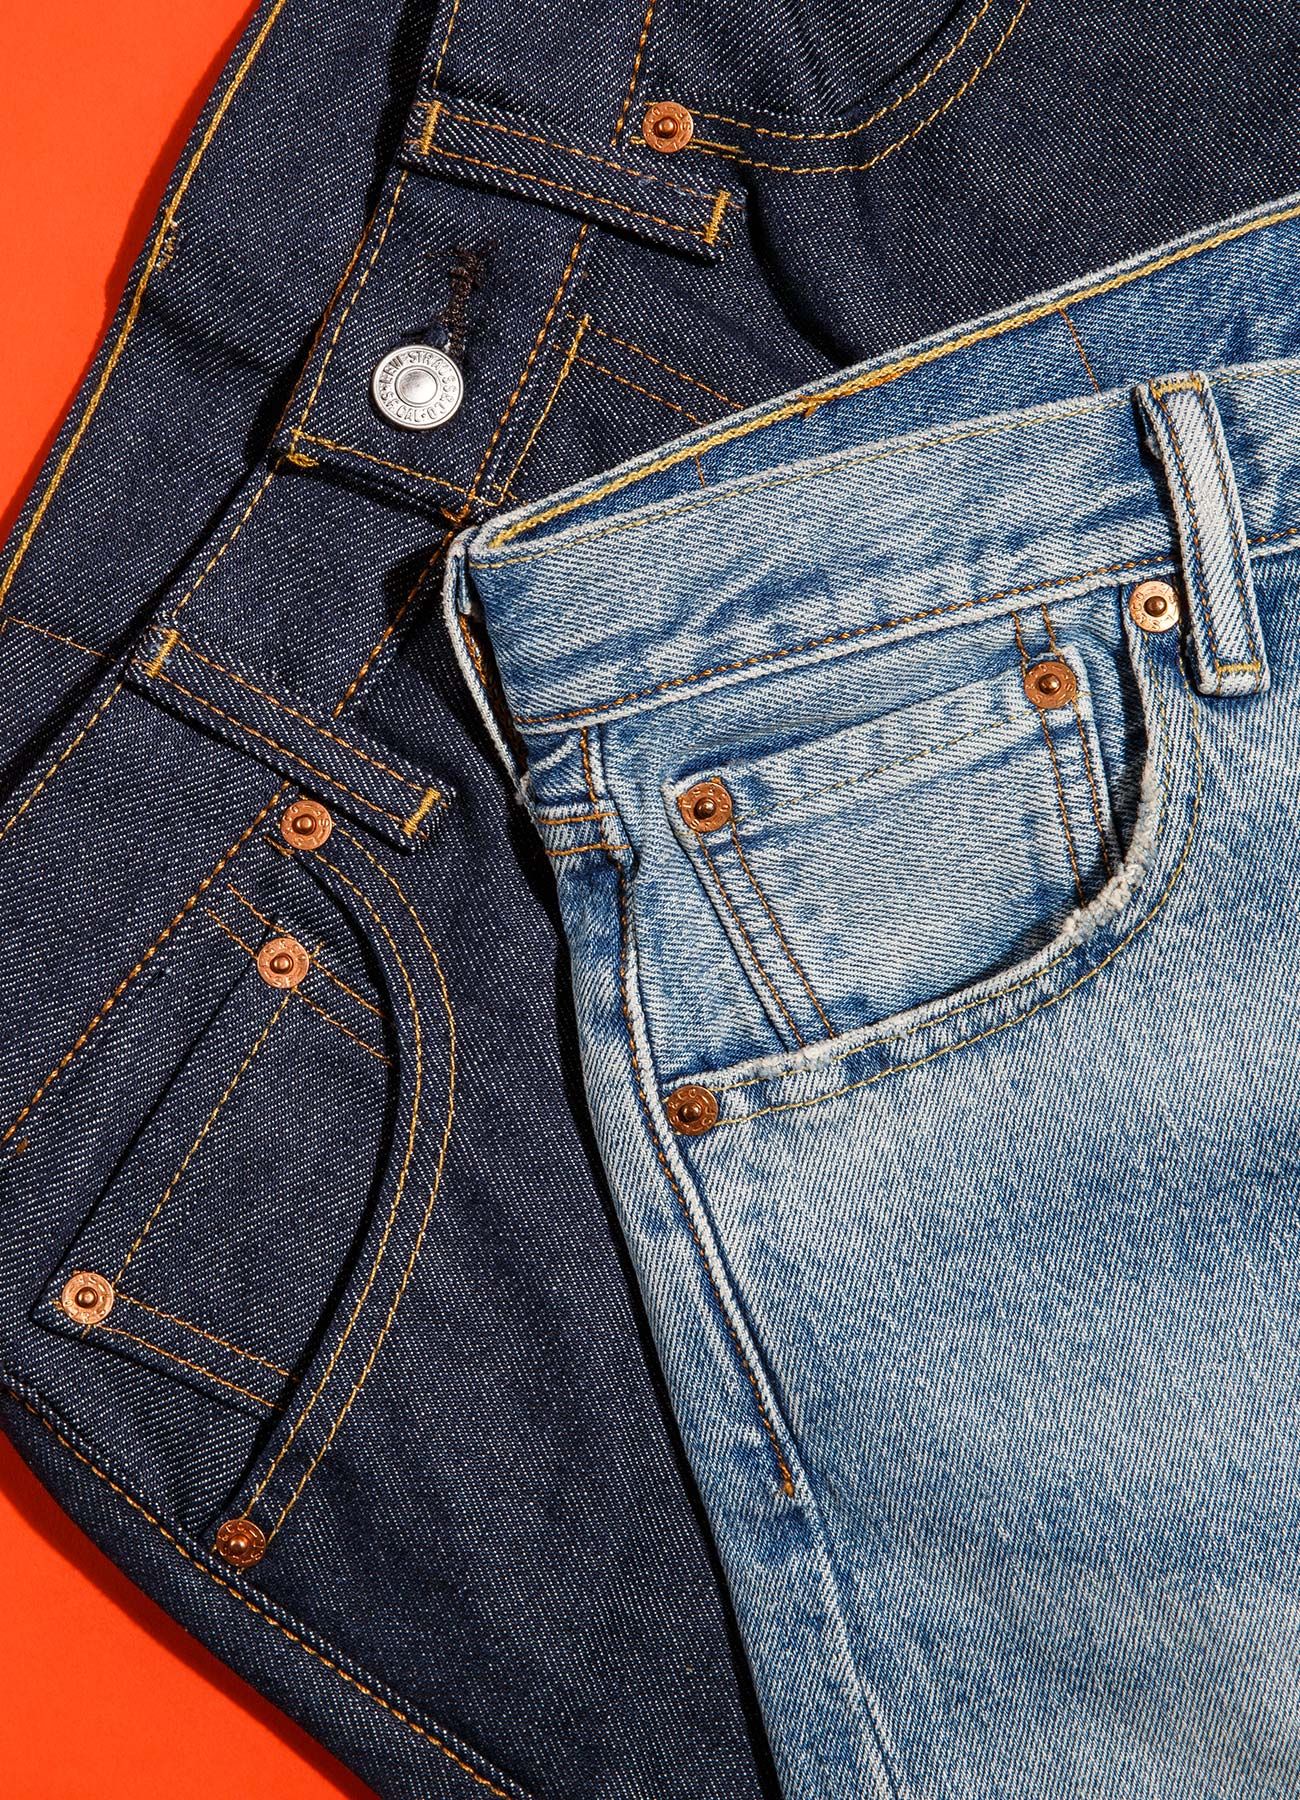 levis 501 jeans review